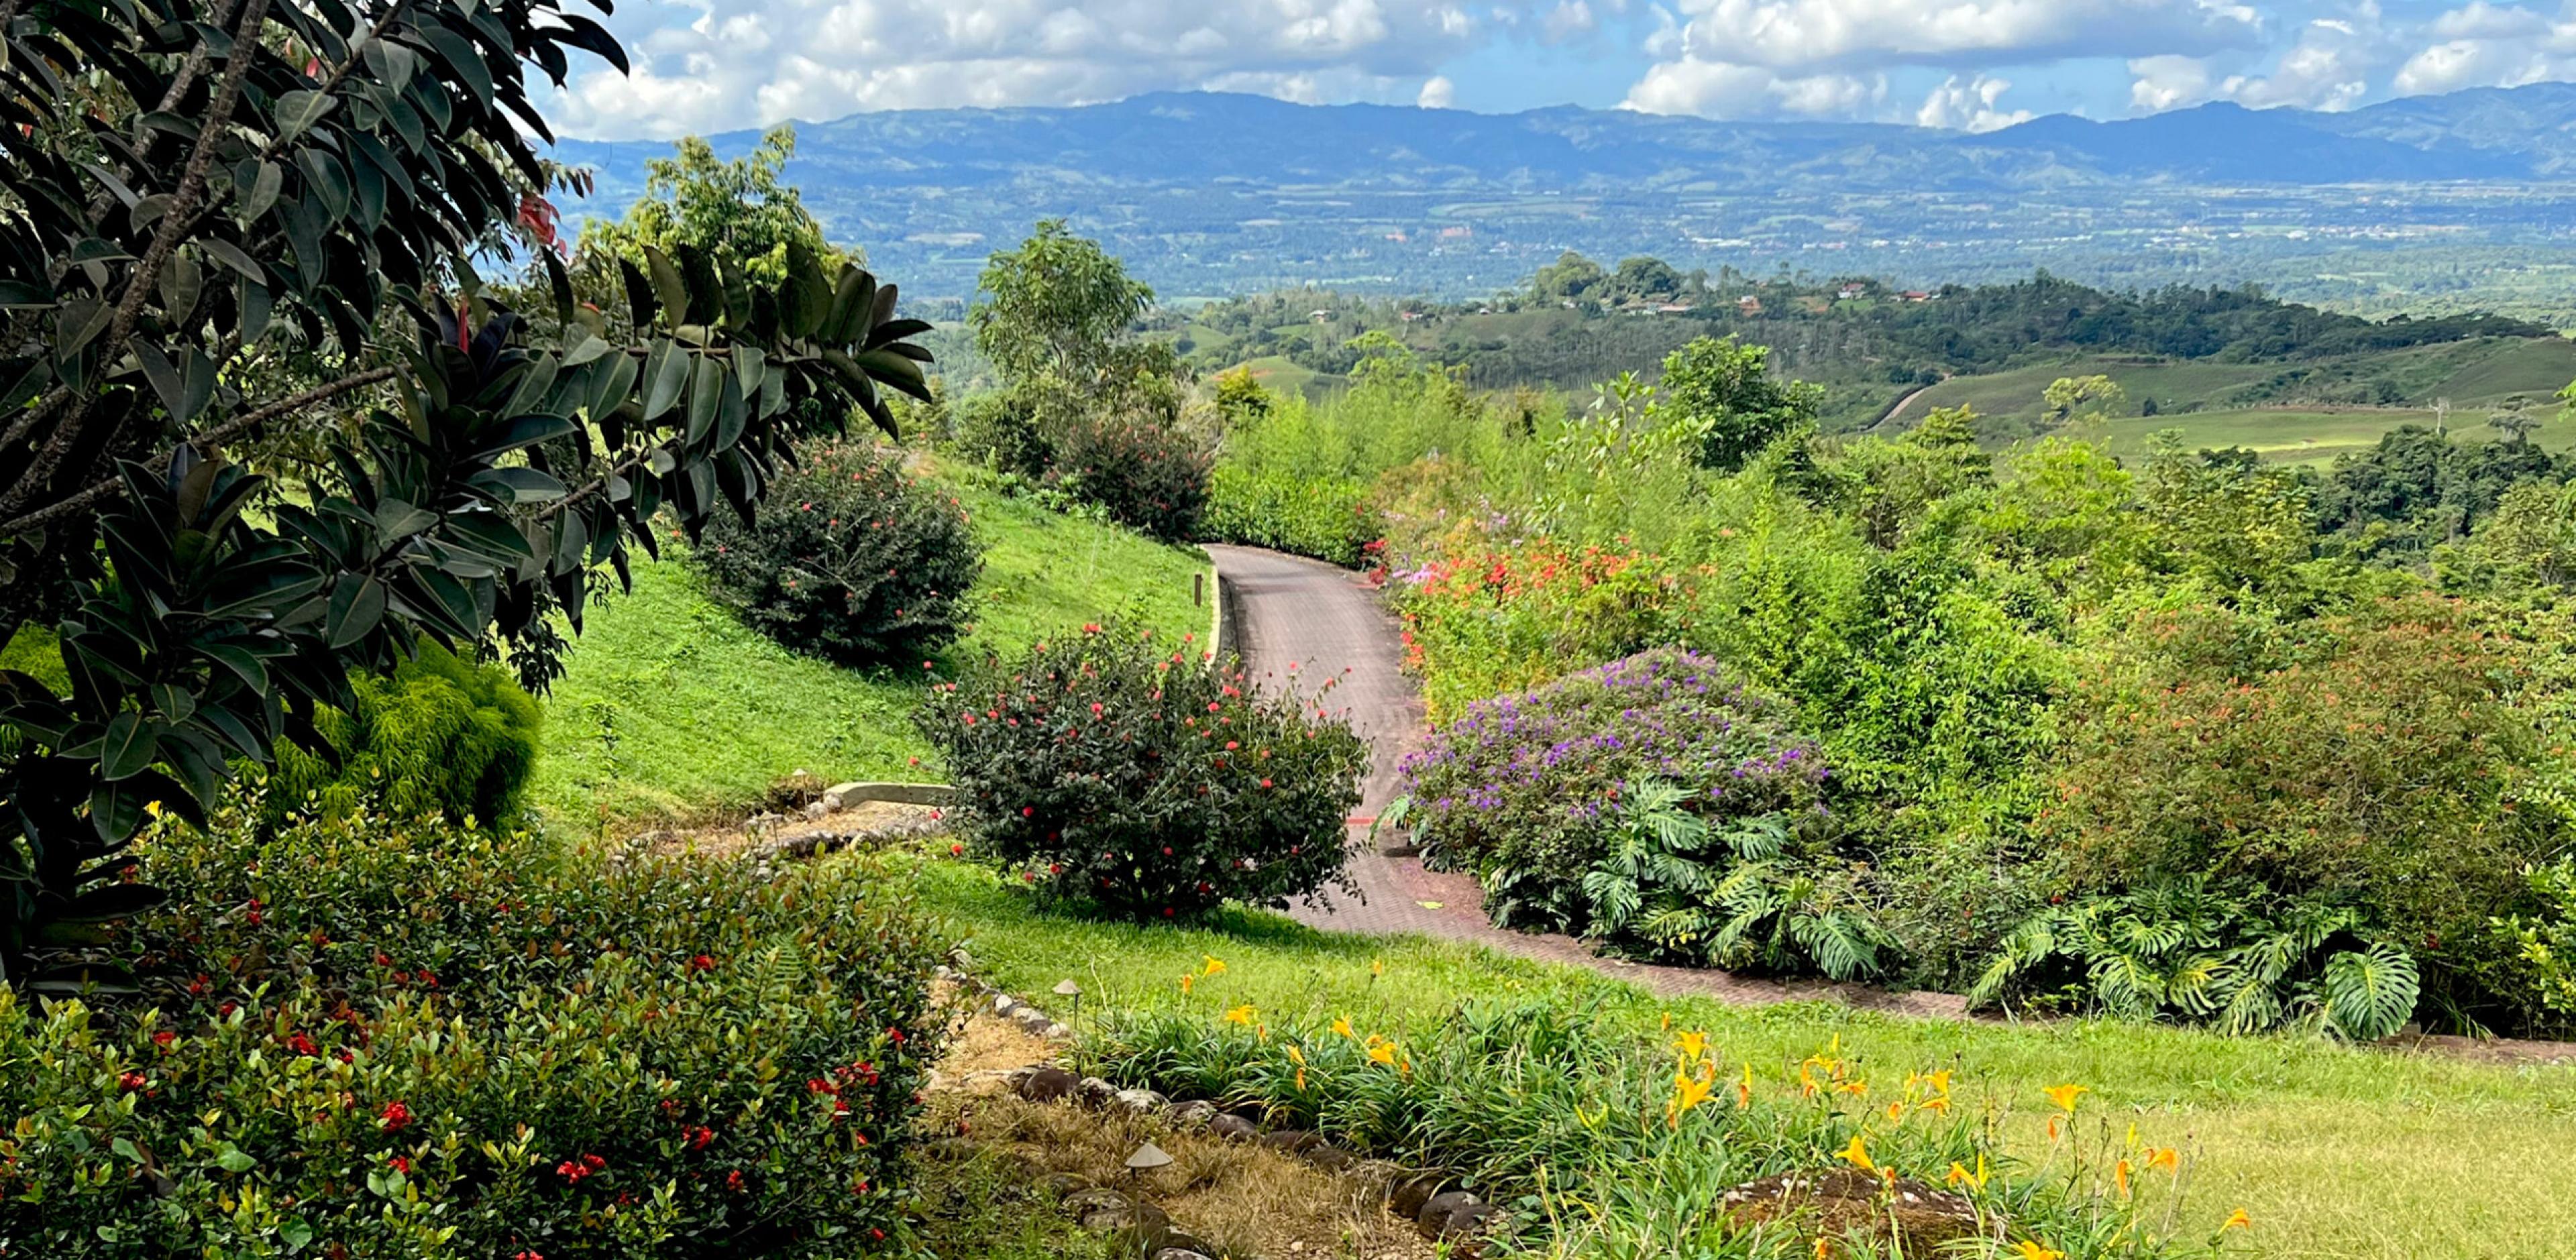 Hacienda AltaGracia retreat in Costa Rica